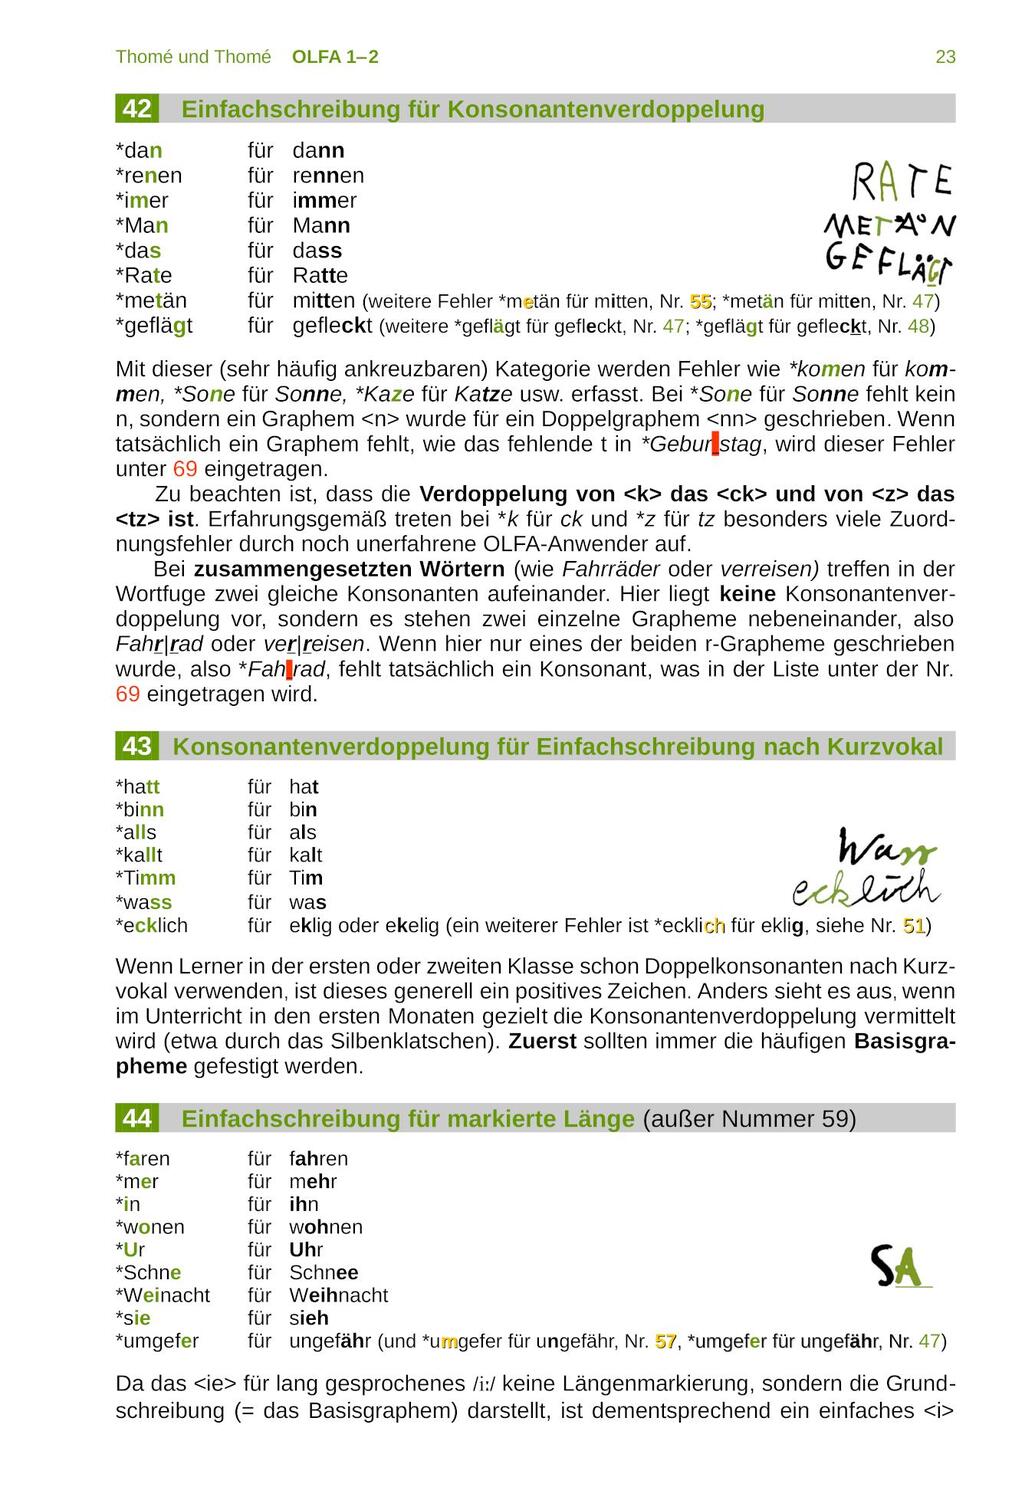 Bild: 9783942122047 | OLFA 1-2: Oldenburger Fehleranalyse für die Klassen 1 und 2 | 52 S.